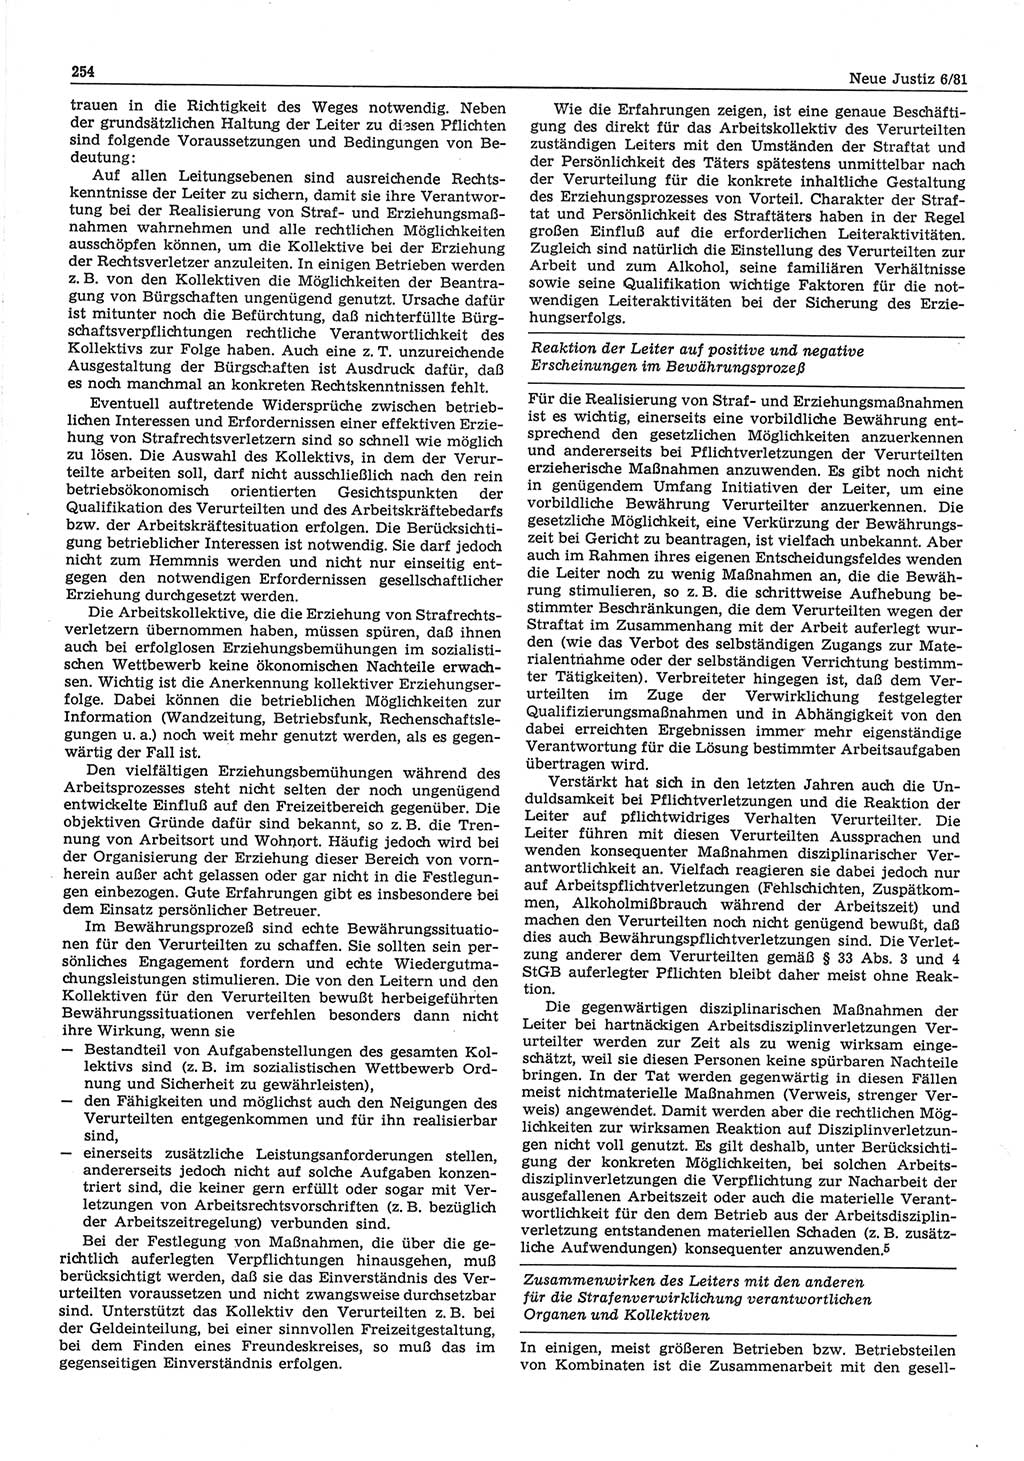 Neue Justiz (NJ), Zeitschrift für sozialistisches Recht und Gesetzlichkeit [Deutsche Demokratische Republik (DDR)], 35. Jahrgang 1981, Seite 254 (NJ DDR 1981, S. 254)